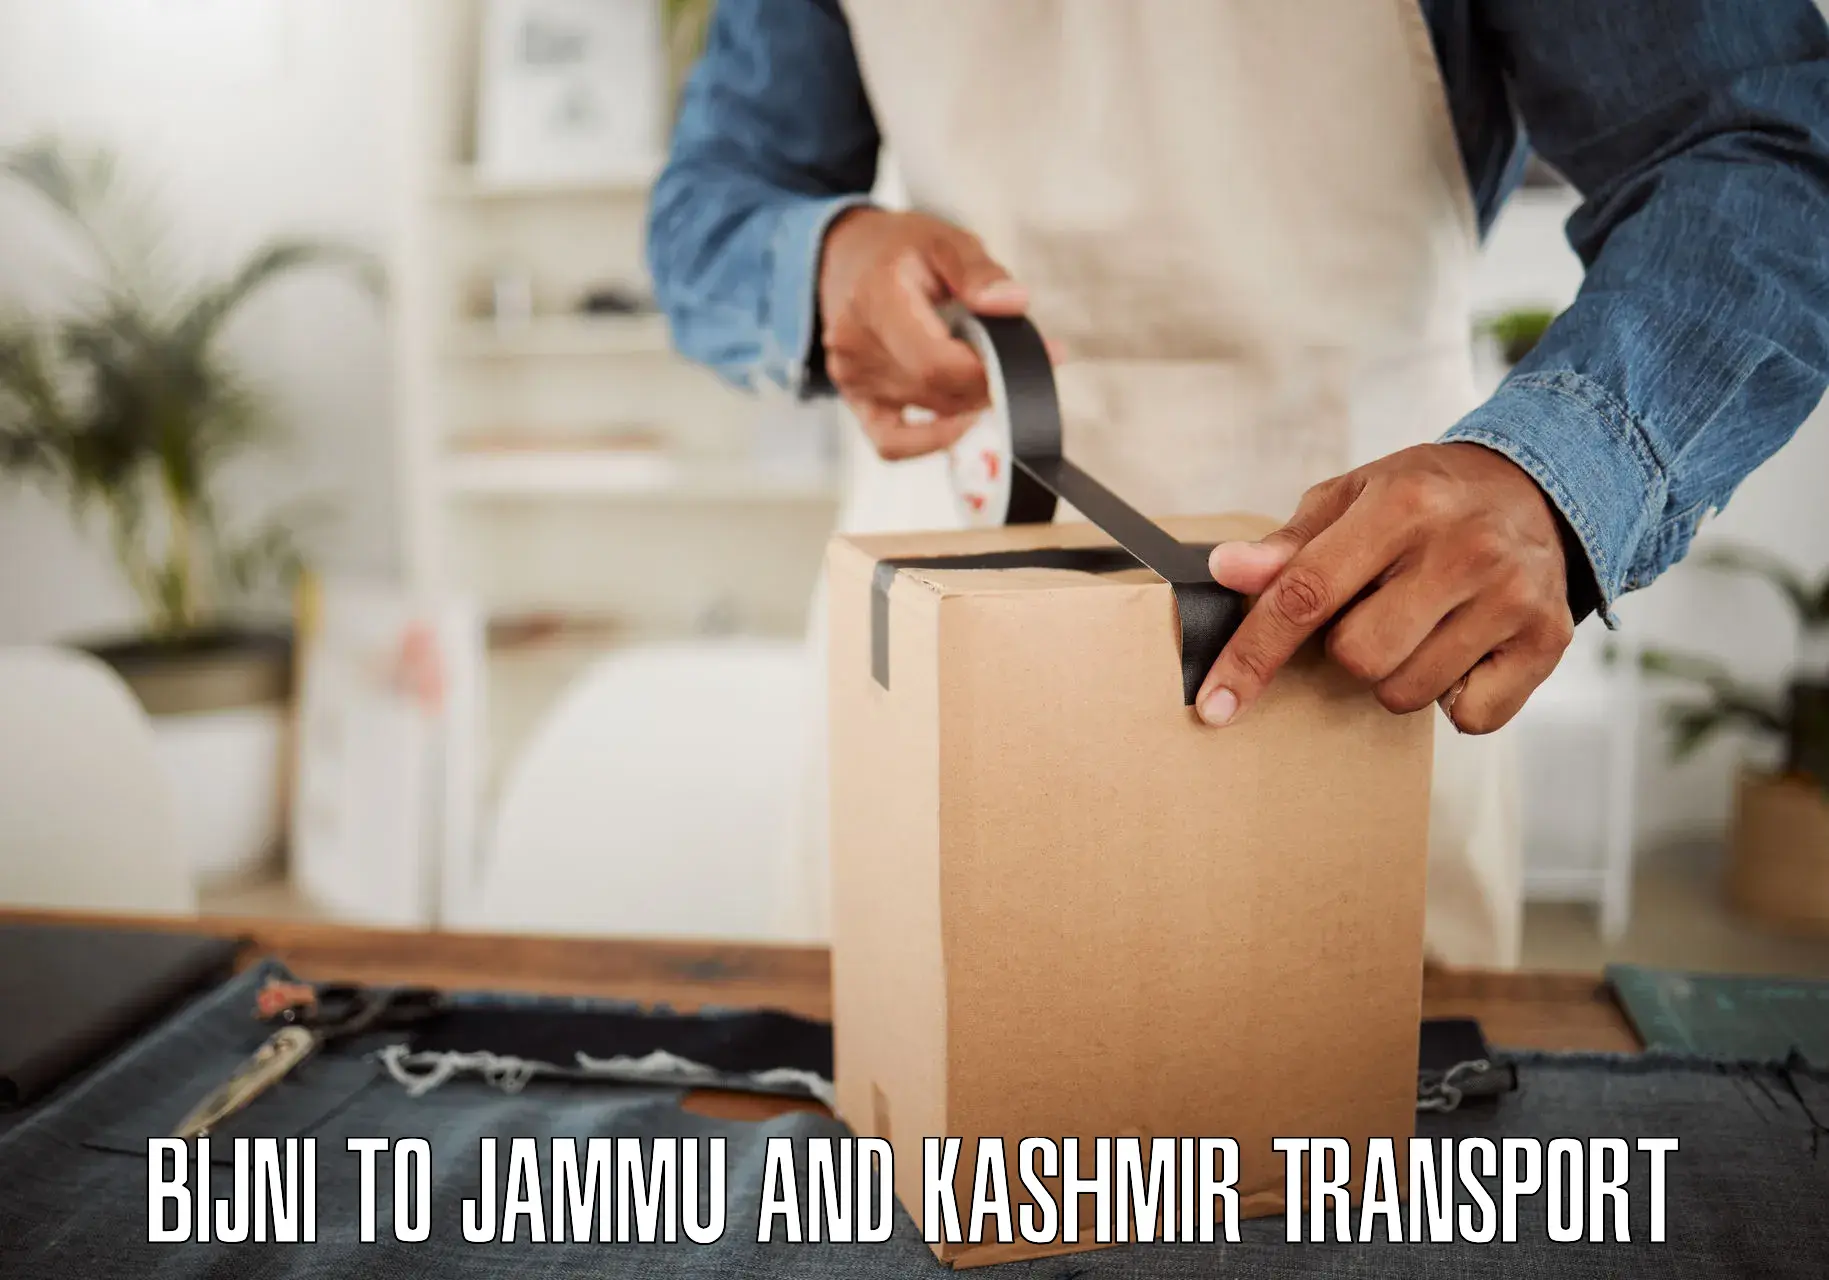 Goods delivery service Bijni to Jammu